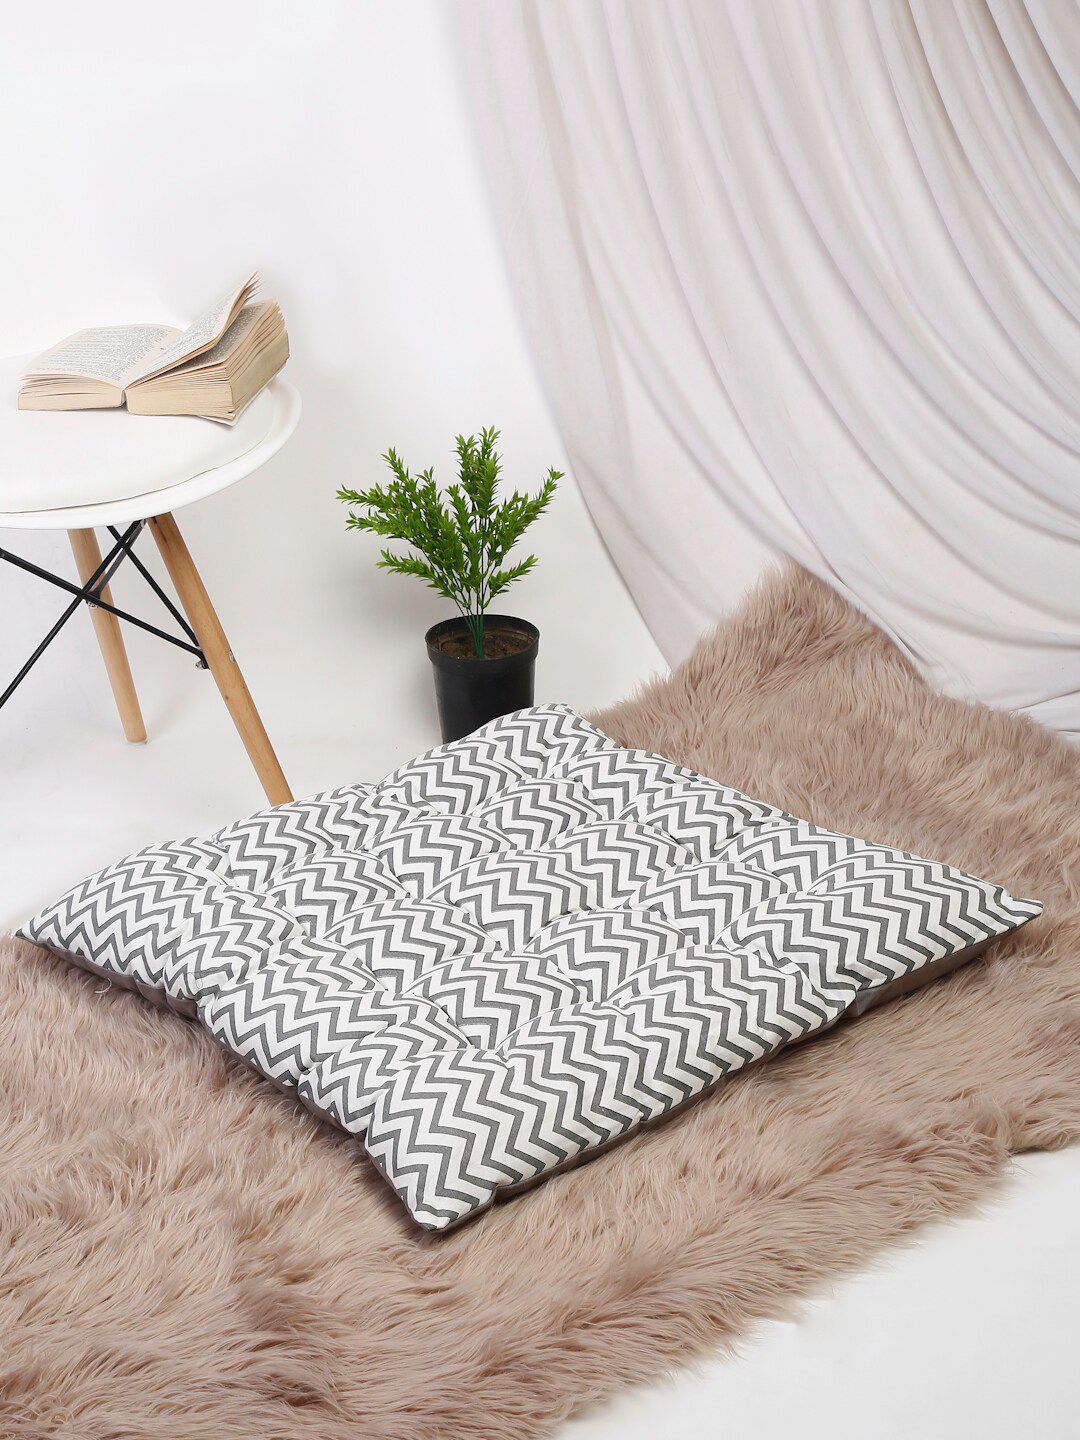 EK BY EKTA KAPOOR Off White & Grey Geometric Print Floor Cushions Price in India